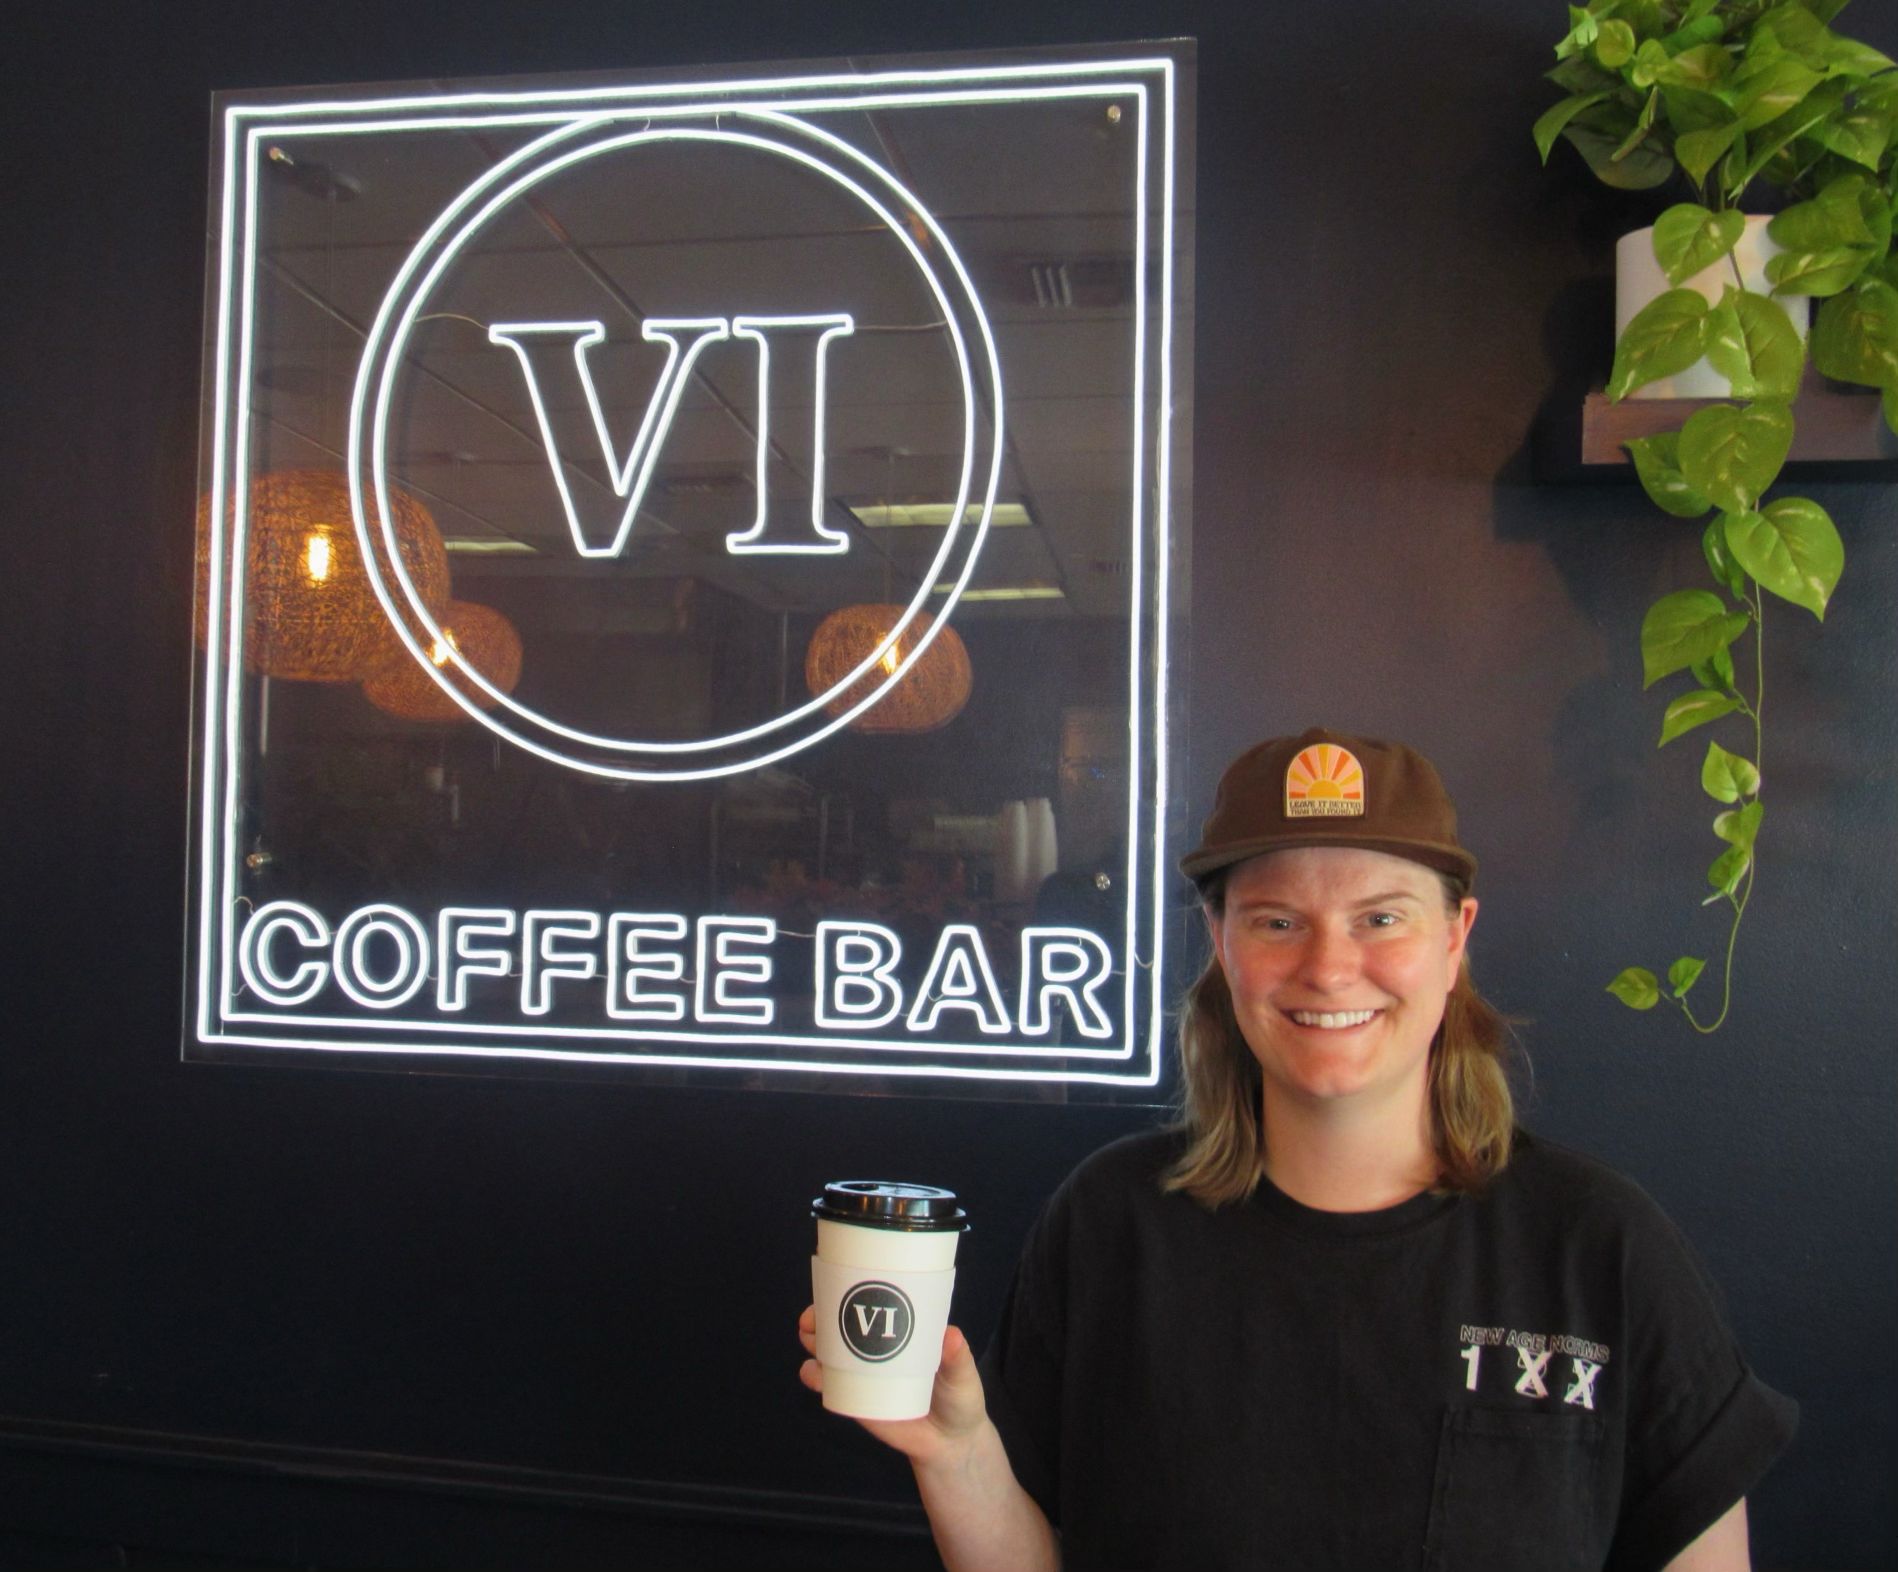 Alumna de la FAU dirige VI Coffee Bar, que sirve café durante el día y bebidas por la noche – PRENSA UNIVERSITARIA